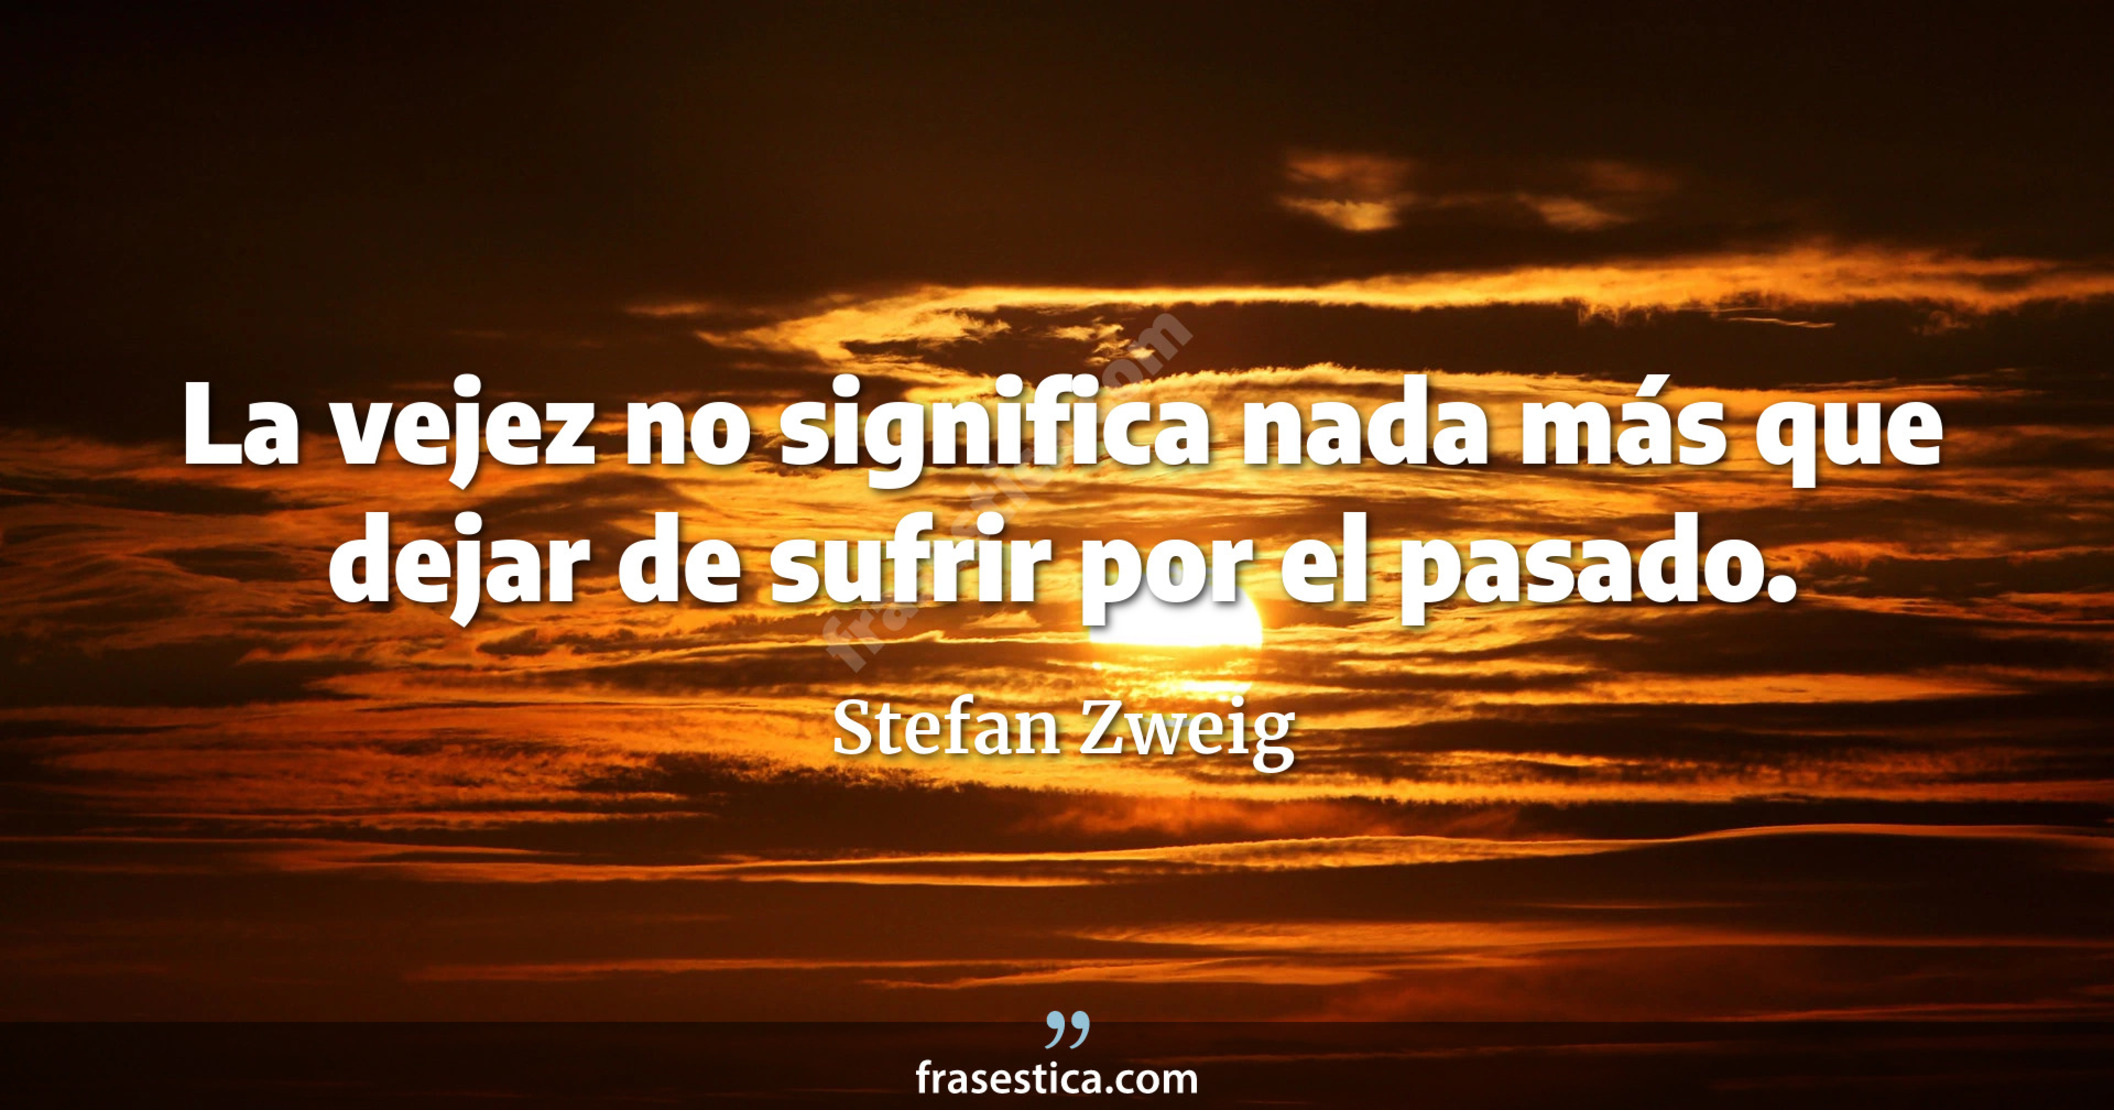 La vejez no significa nada más que dejar de sufrir por el pasado. - Stefan Zweig